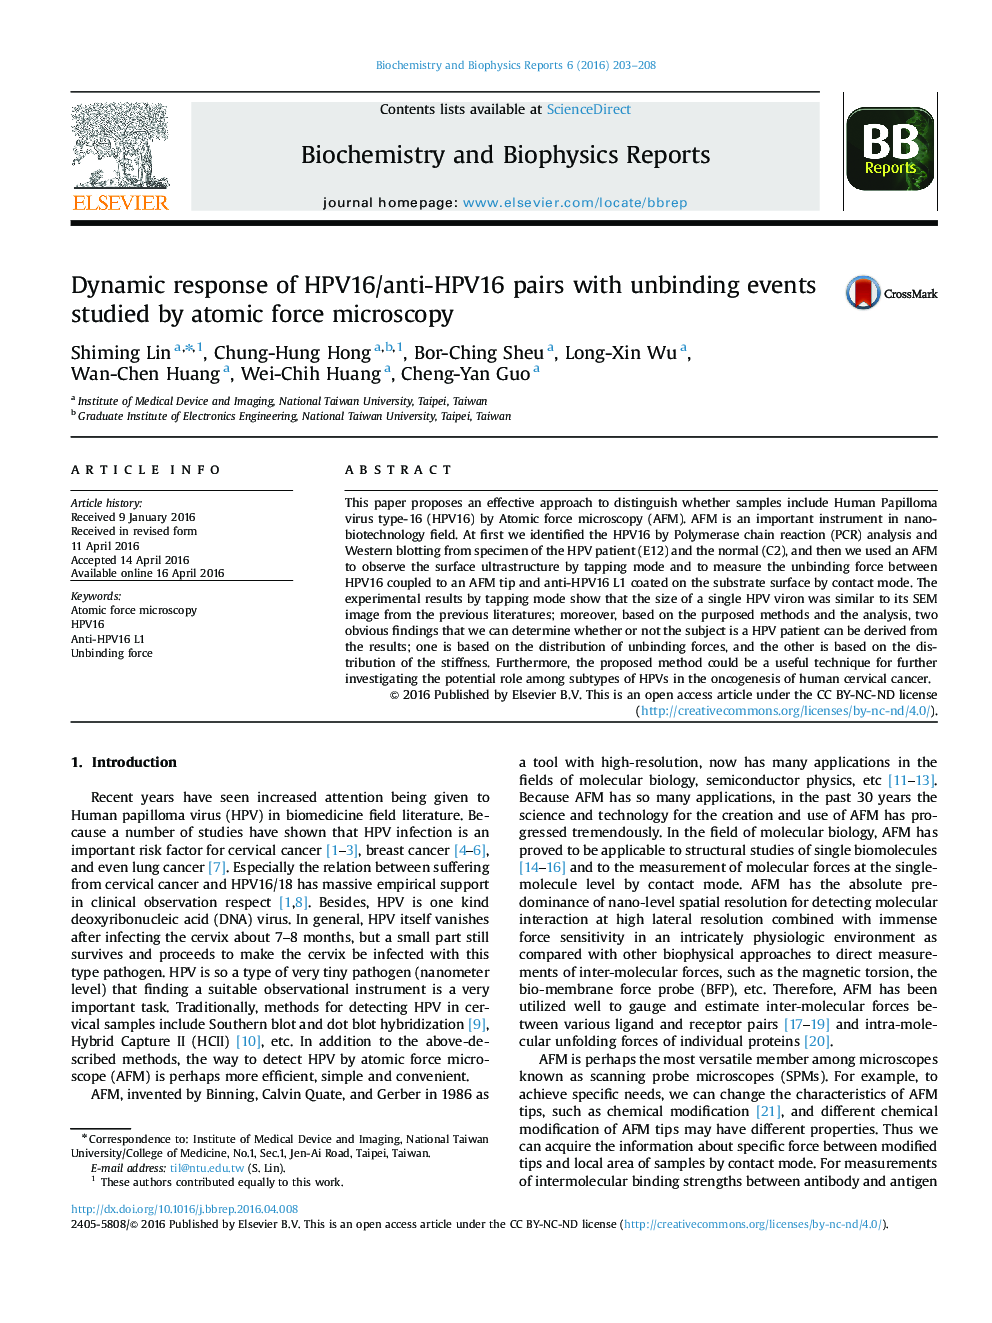 پاسخ دینامیکی جفت های ضد HPV16/HPV16 با رویدادهای غیراختصاصی مورد مطالعه با استفاده از میکروسکوپ نیروی اتمی